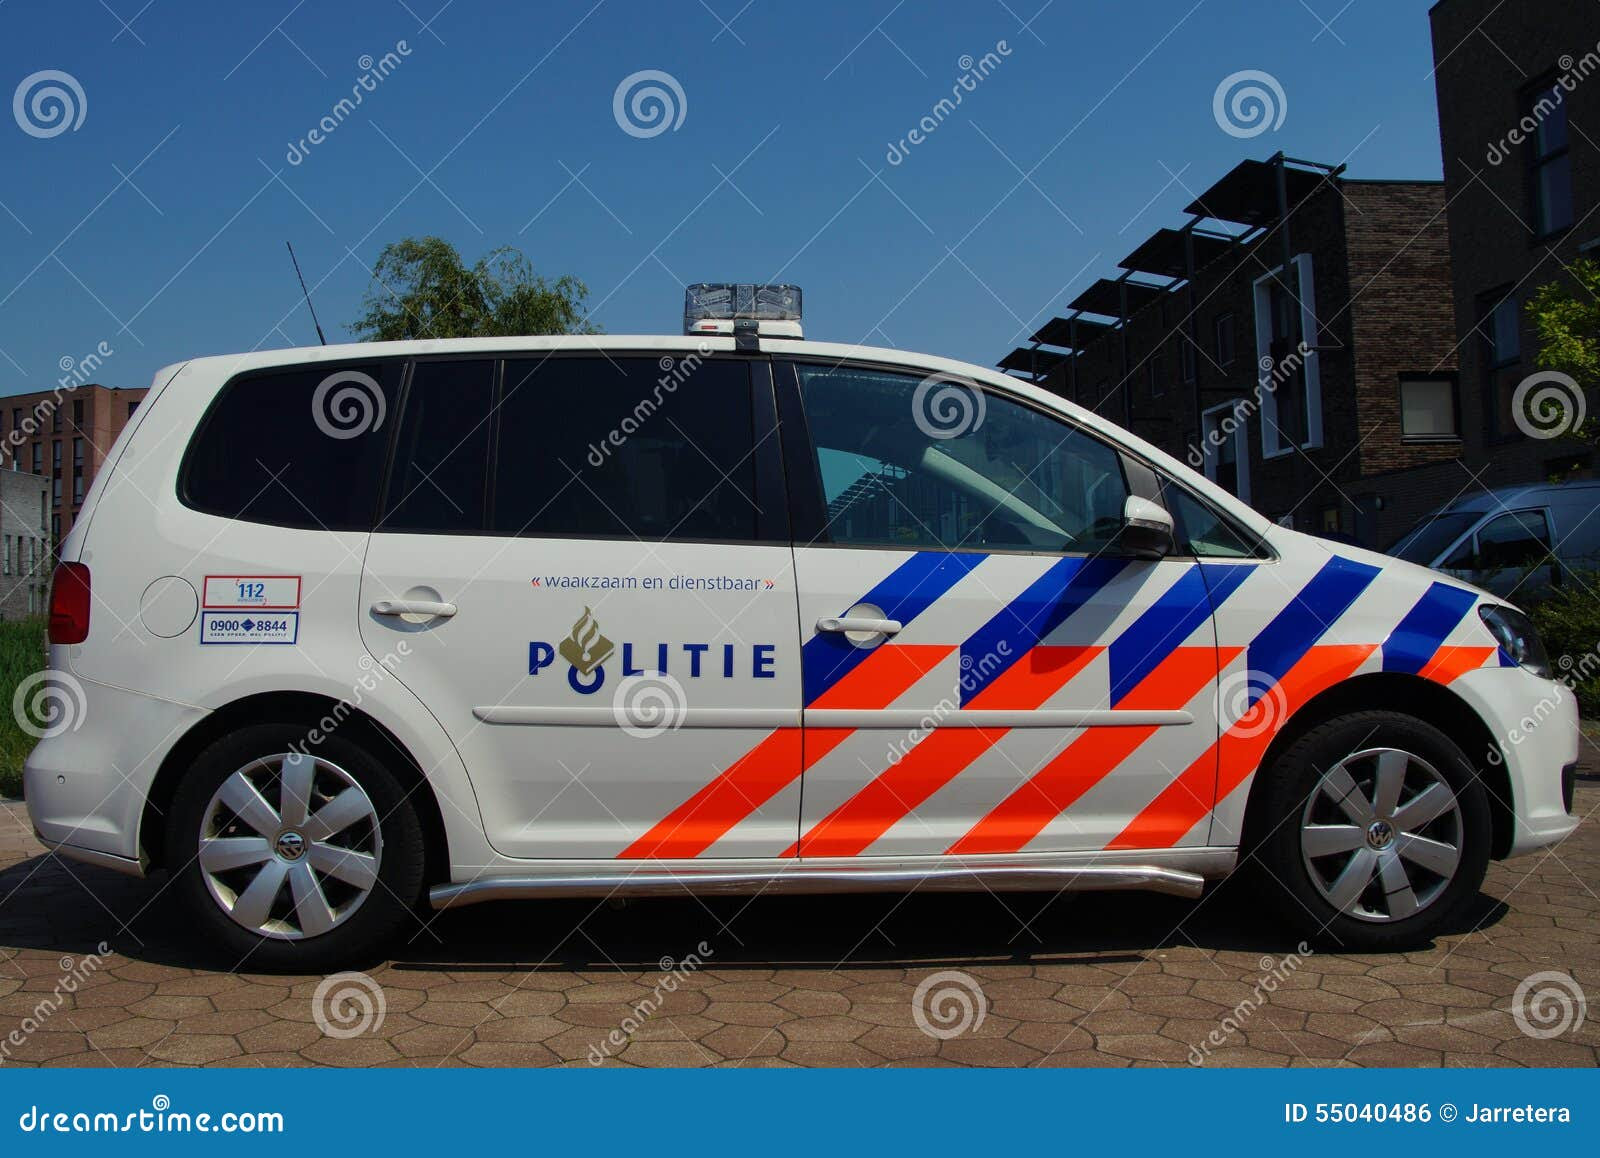 Nederlandse Politiewagen (Volkswagen Touran) - Nationale politie